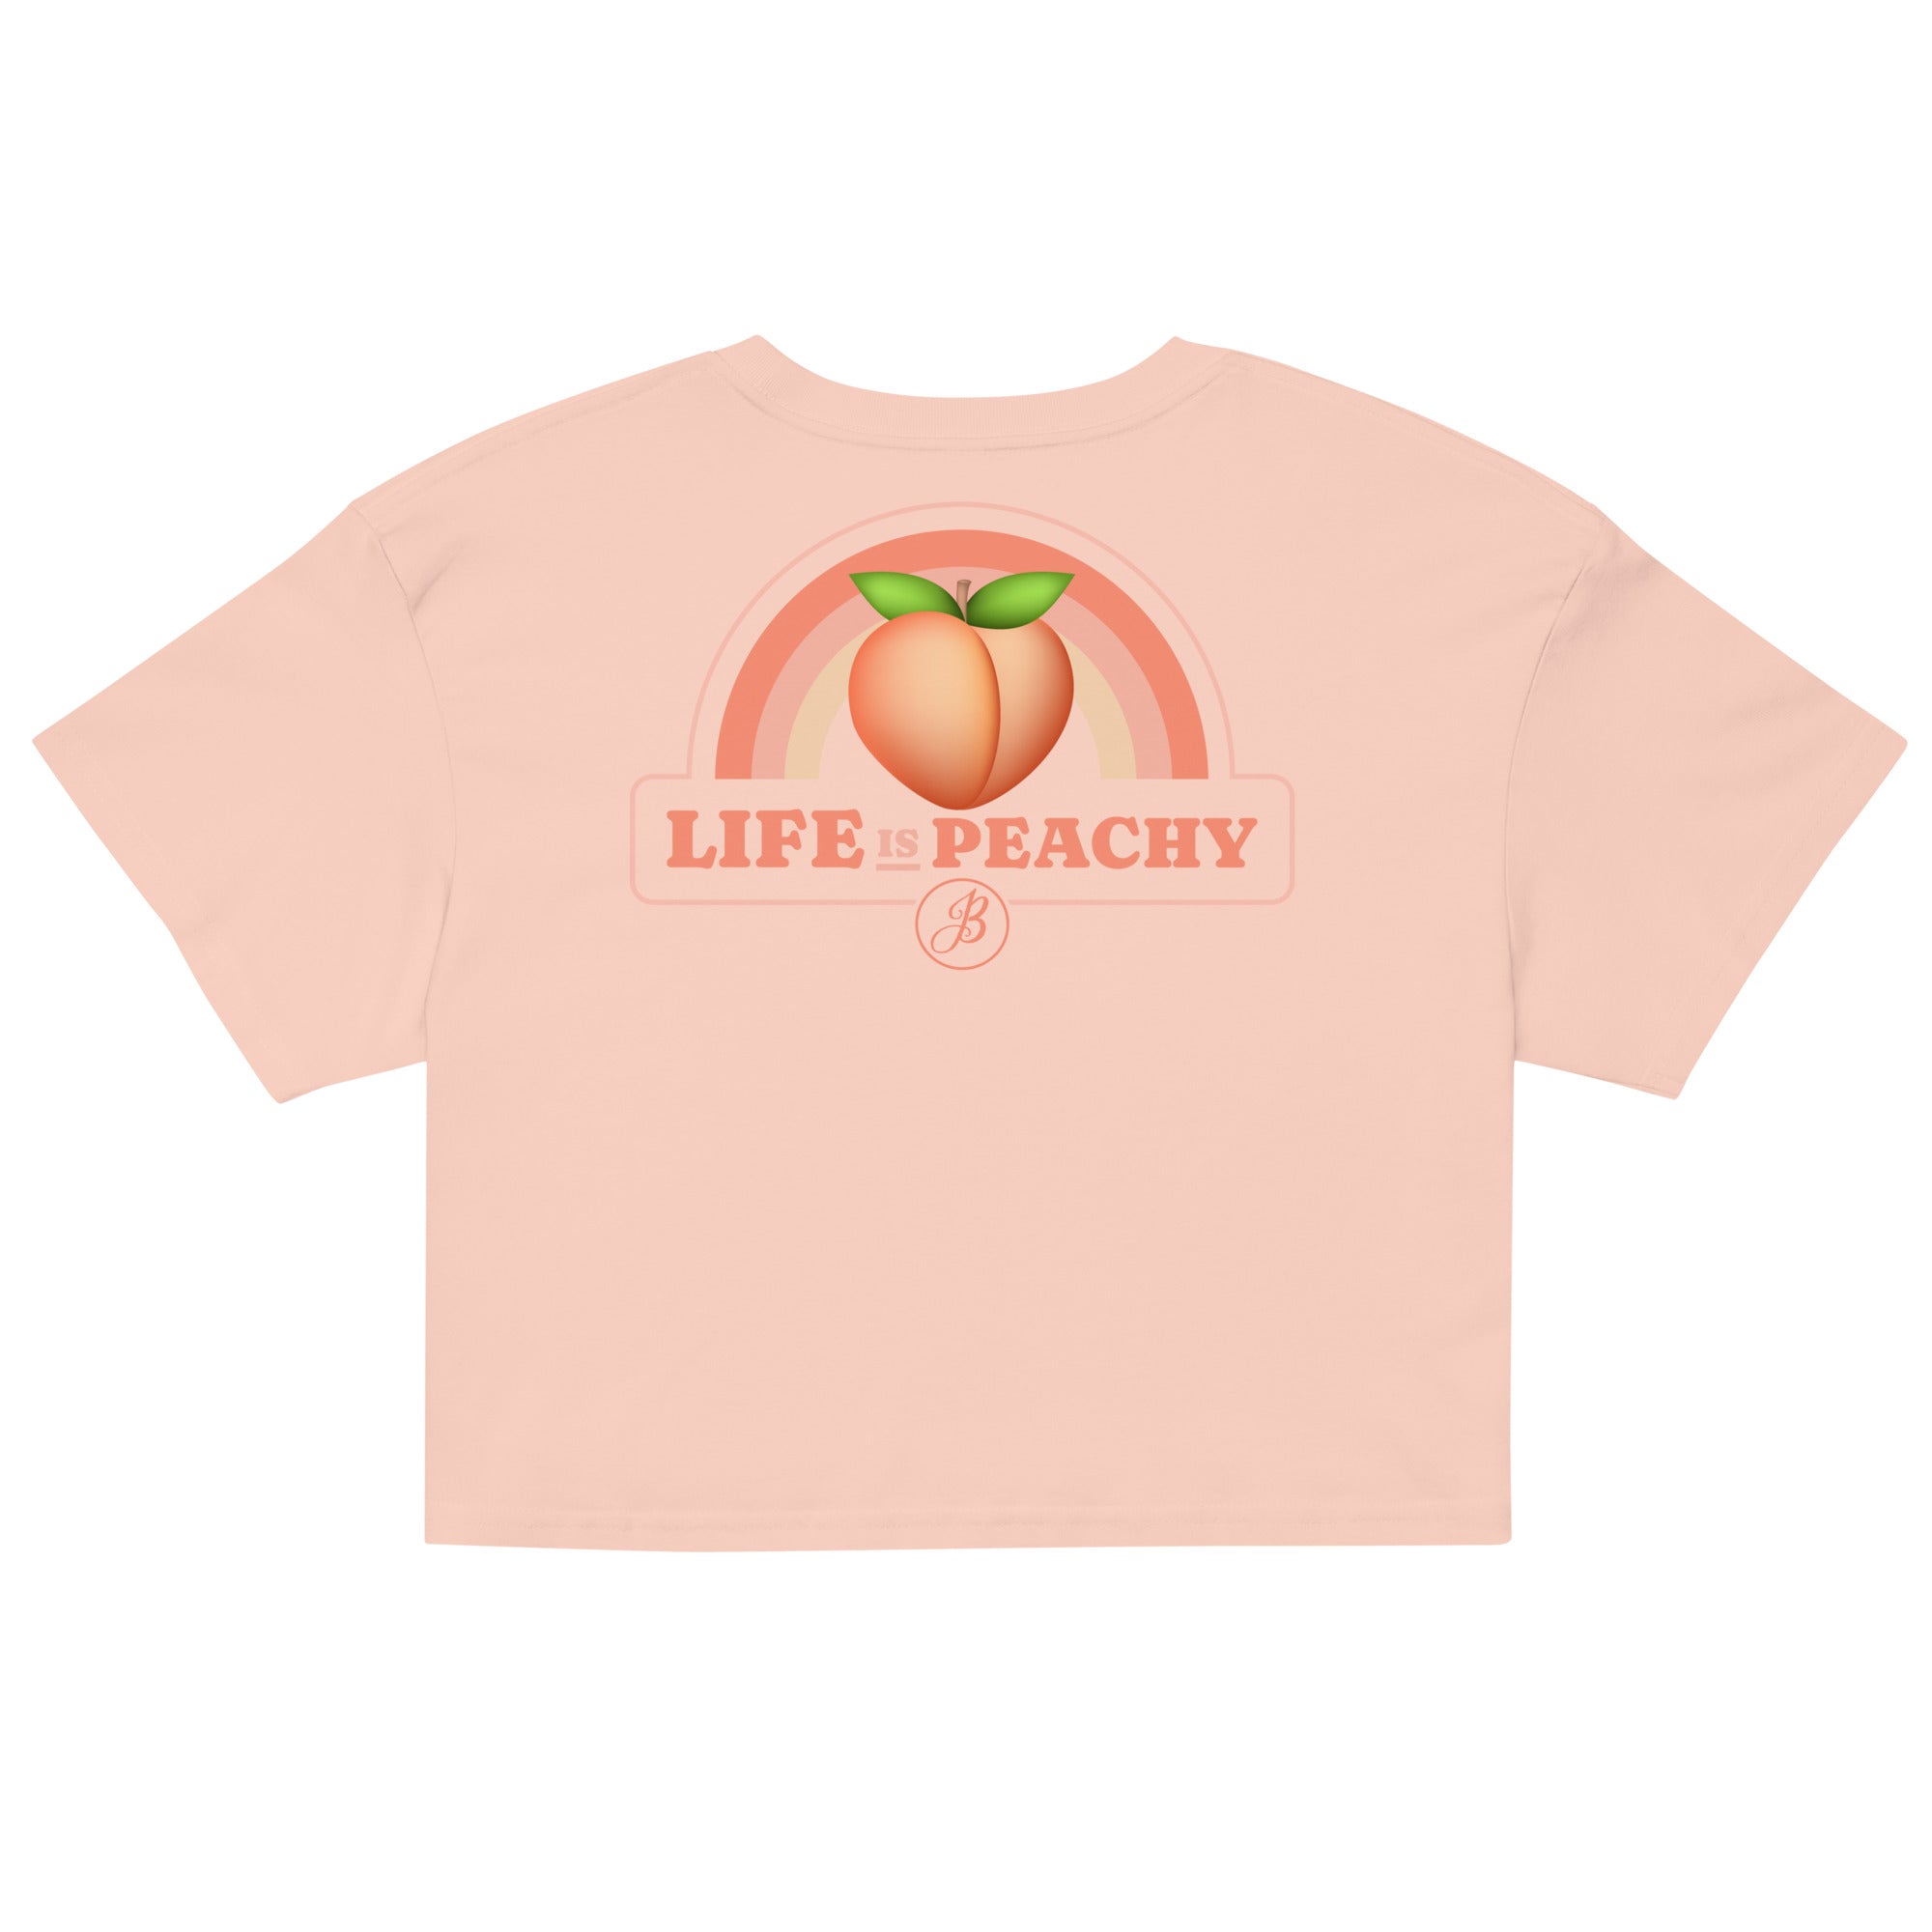 Peachy Women’s crop top